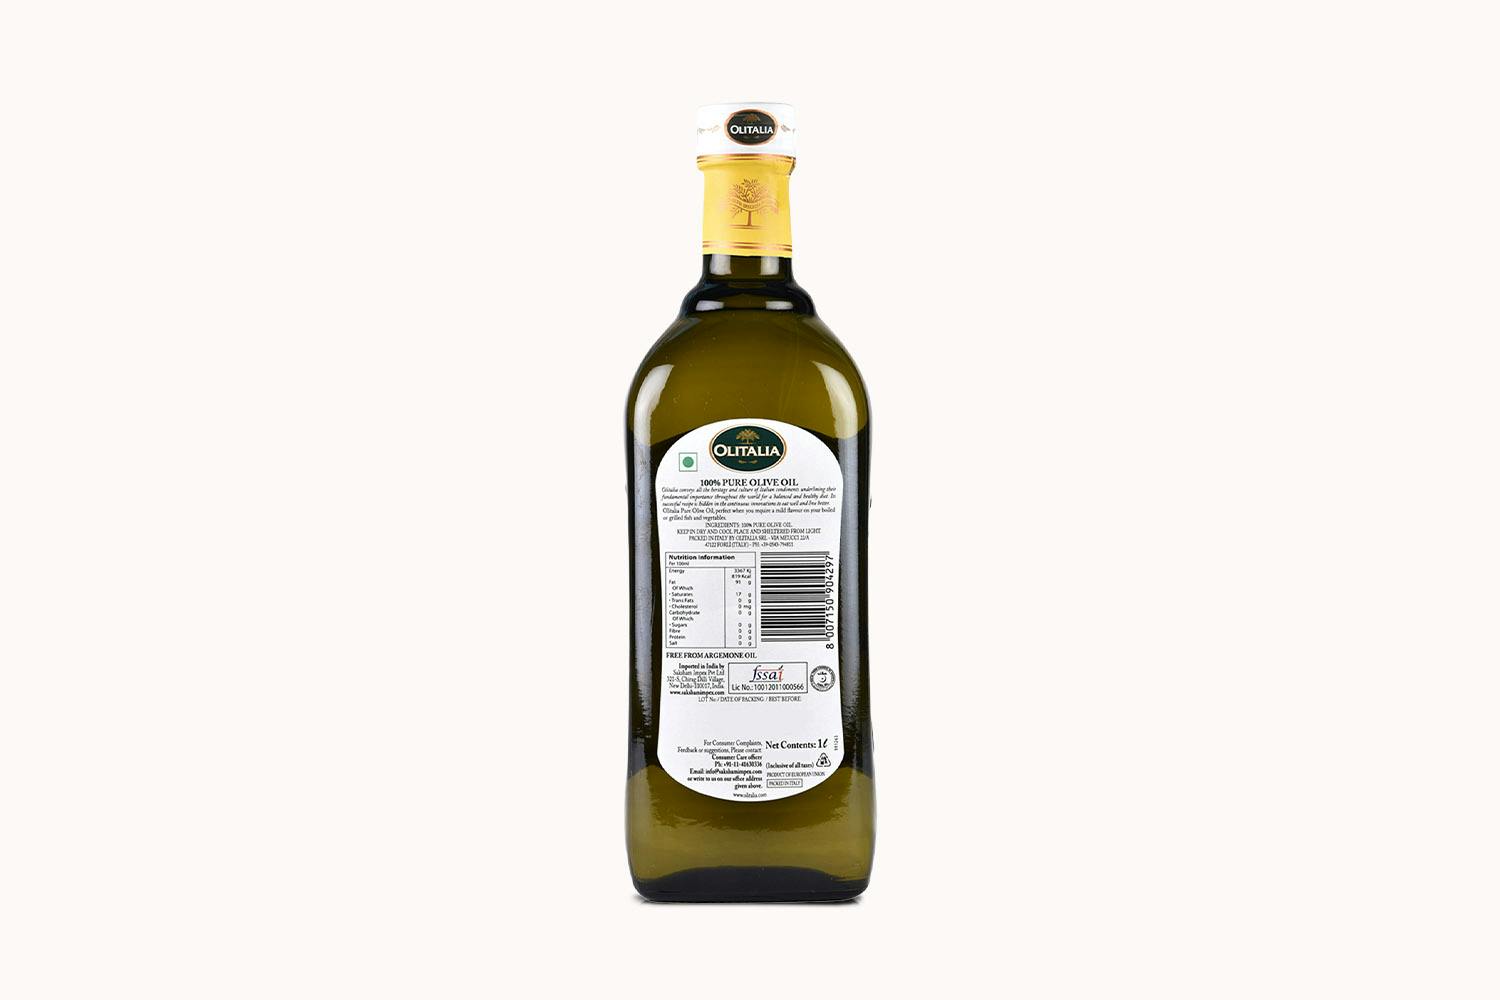 /o/l/olitalia-olive-oil-pure-1l-2_9iypf1pqbnfz42tn.jpg